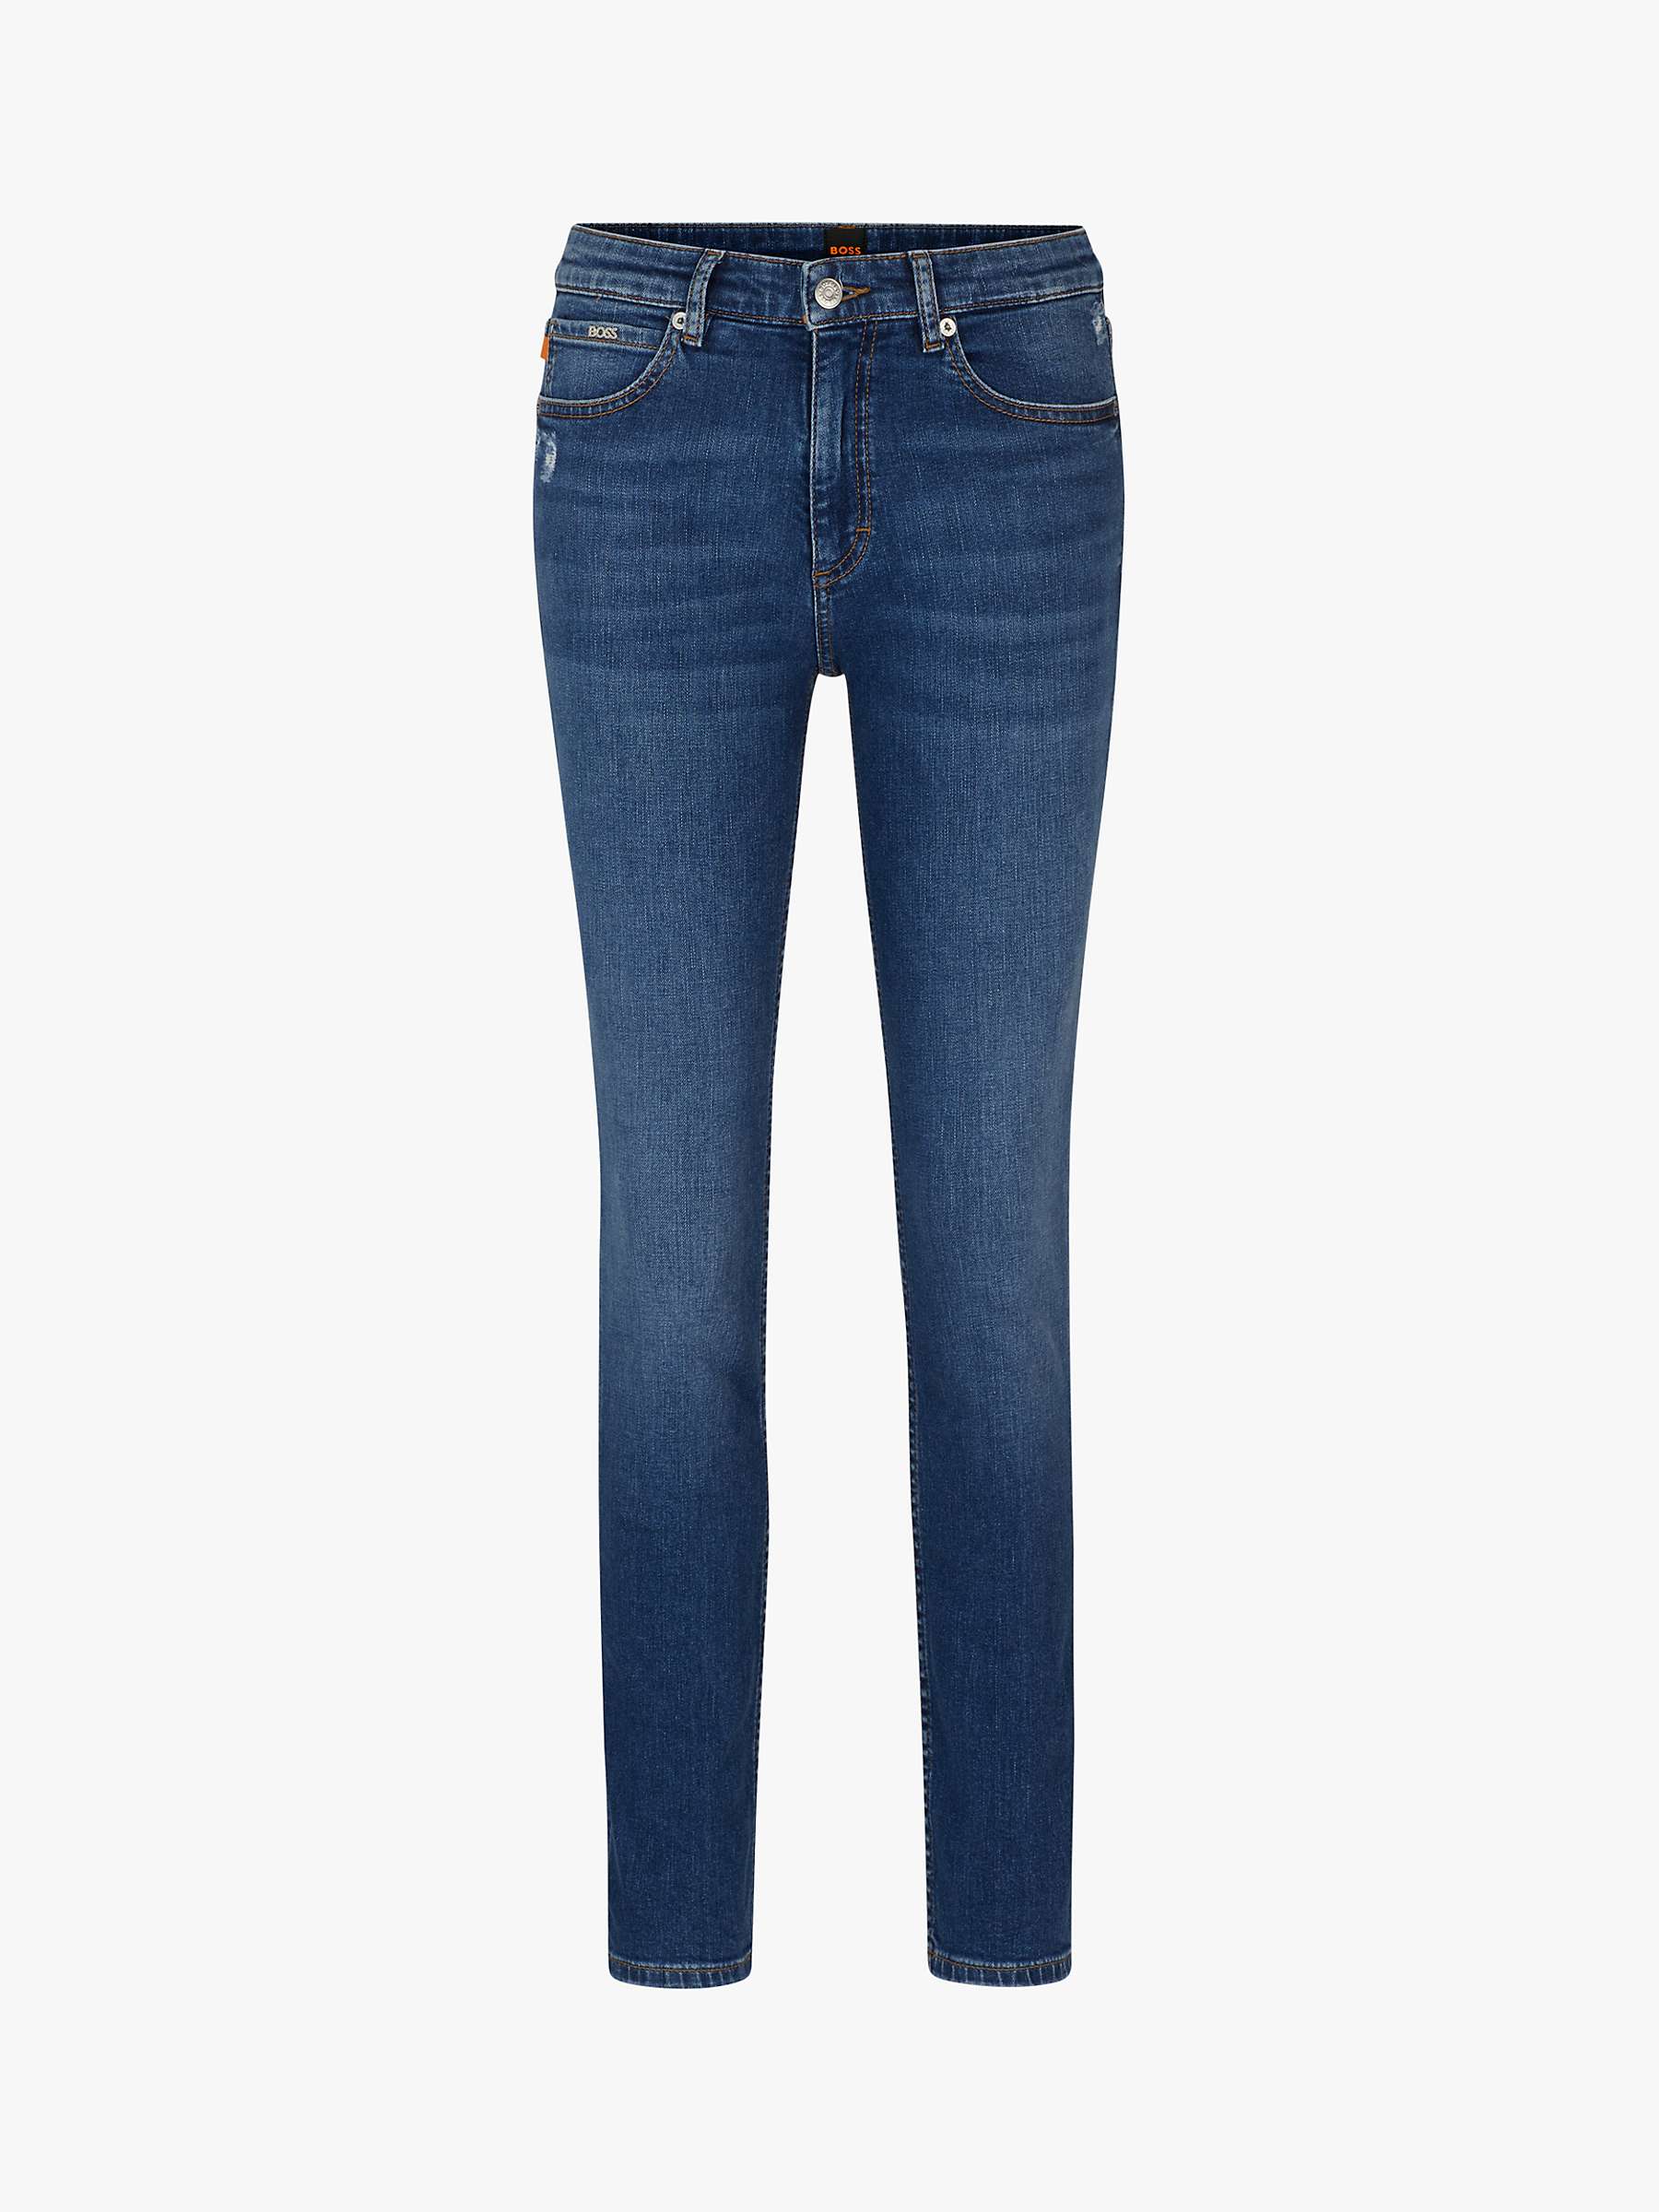 Buy BOSS Jackie Skinny Jeans, Navy Online at johnlewis.com